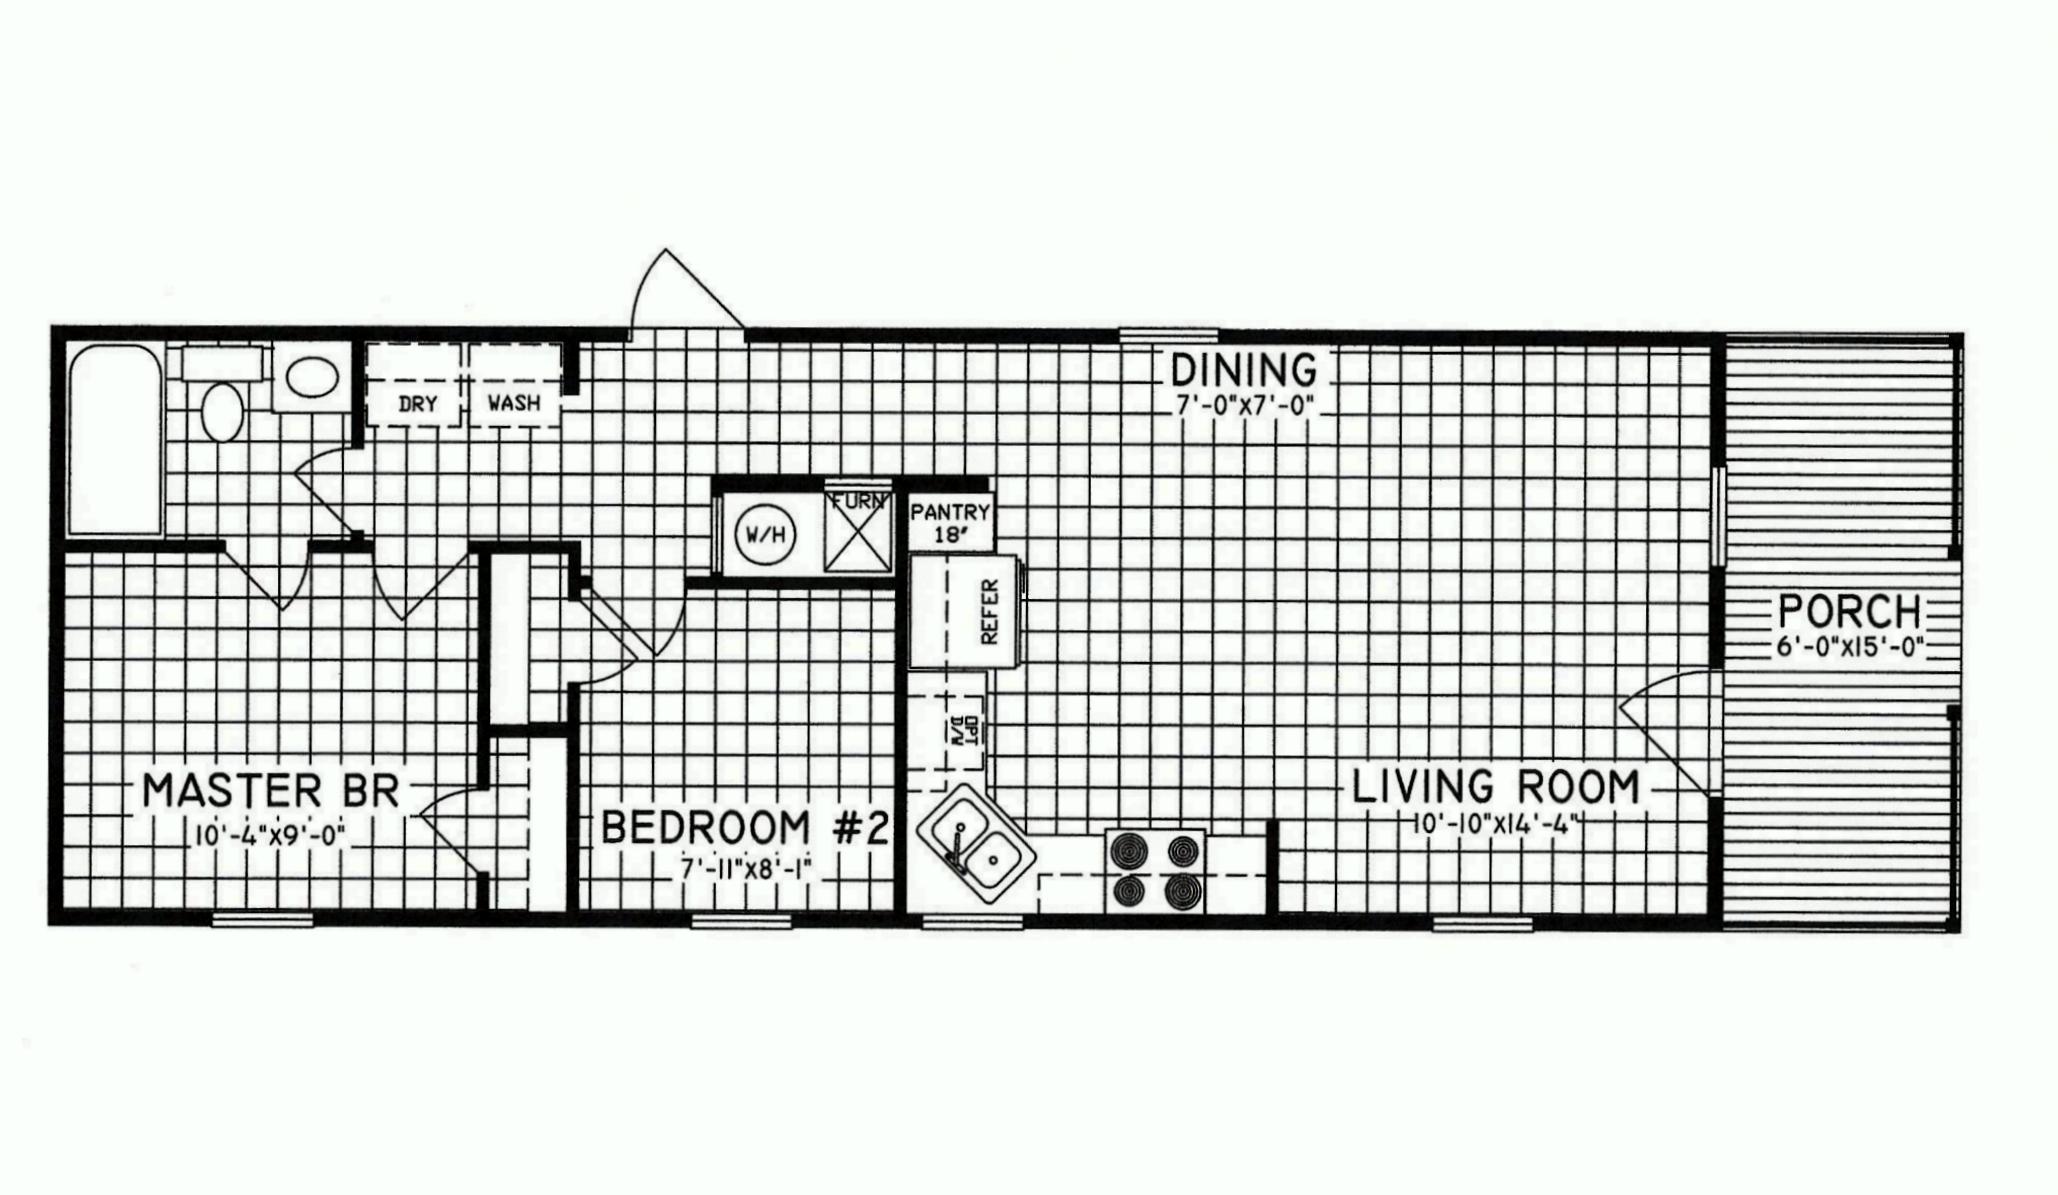 2 Bedroom Floor Plan C7101 Hawks Homes Manufactured